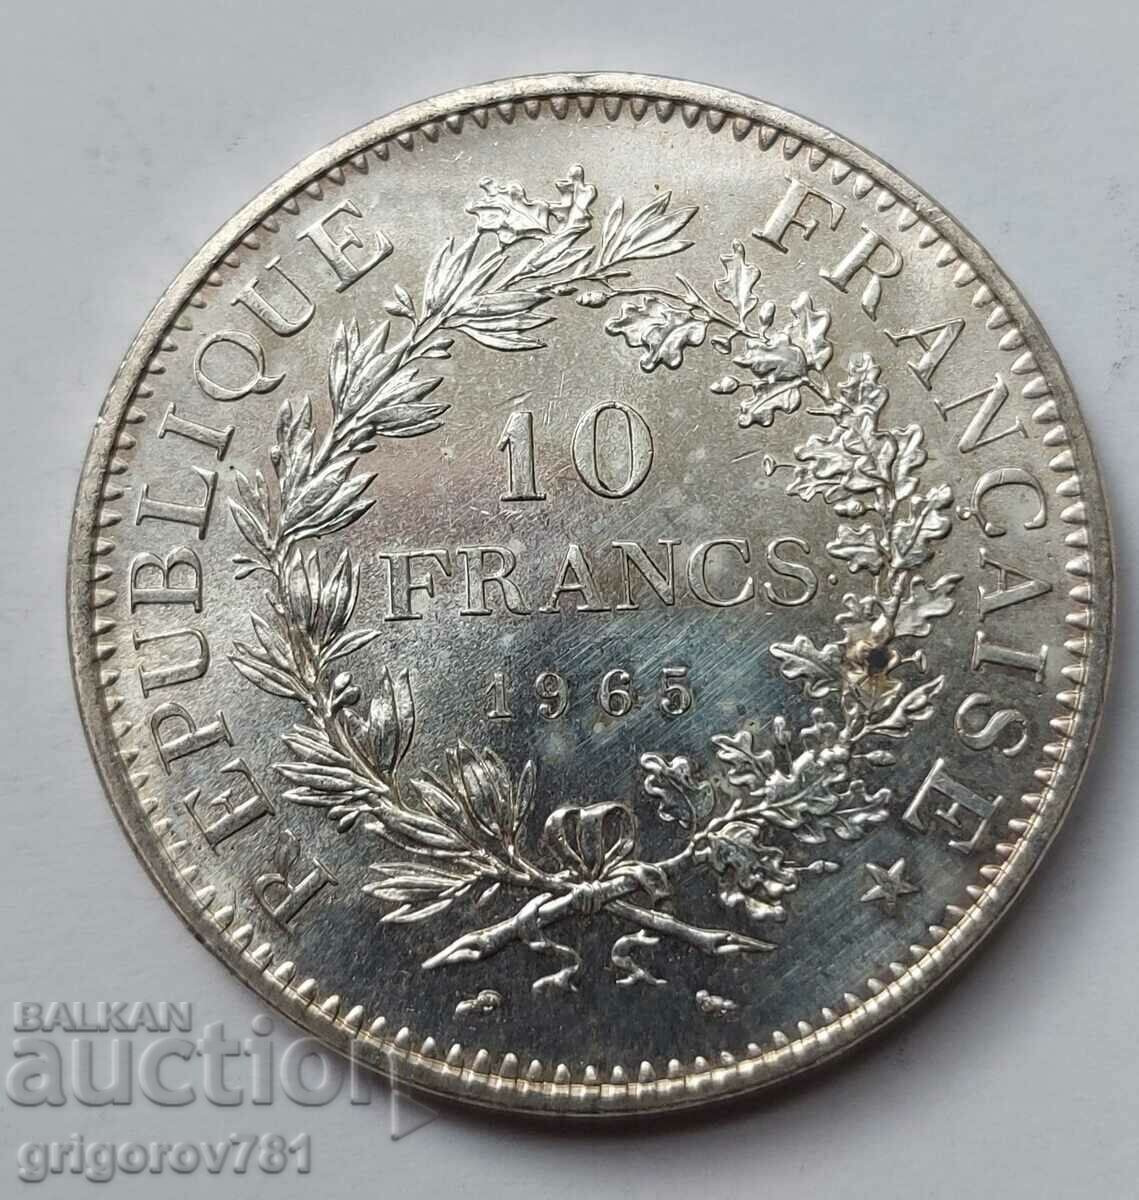 10 Franci Argint Franta 1965 - Moneda de argint #46